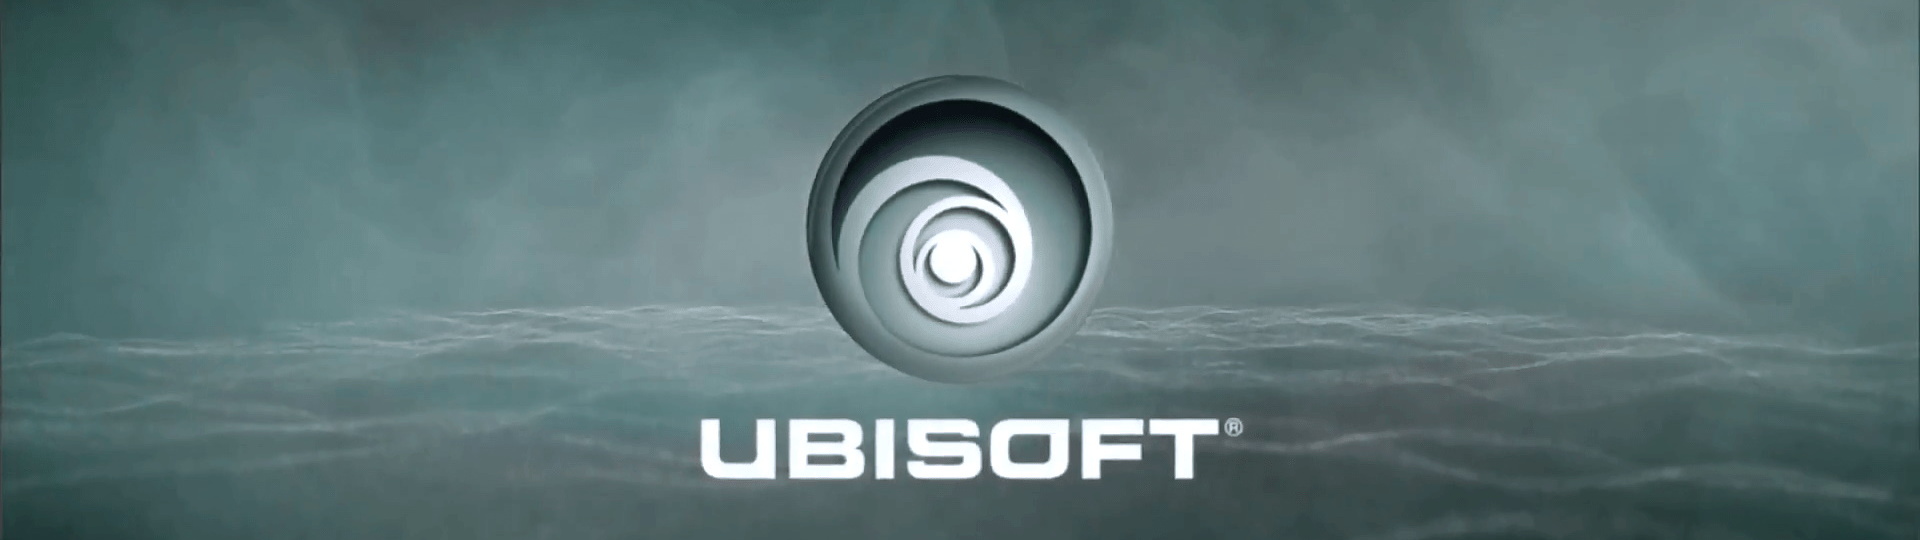 Ubisoft ohlásil seznam her, které nebudou kompatibilní s PS5 | Novinky